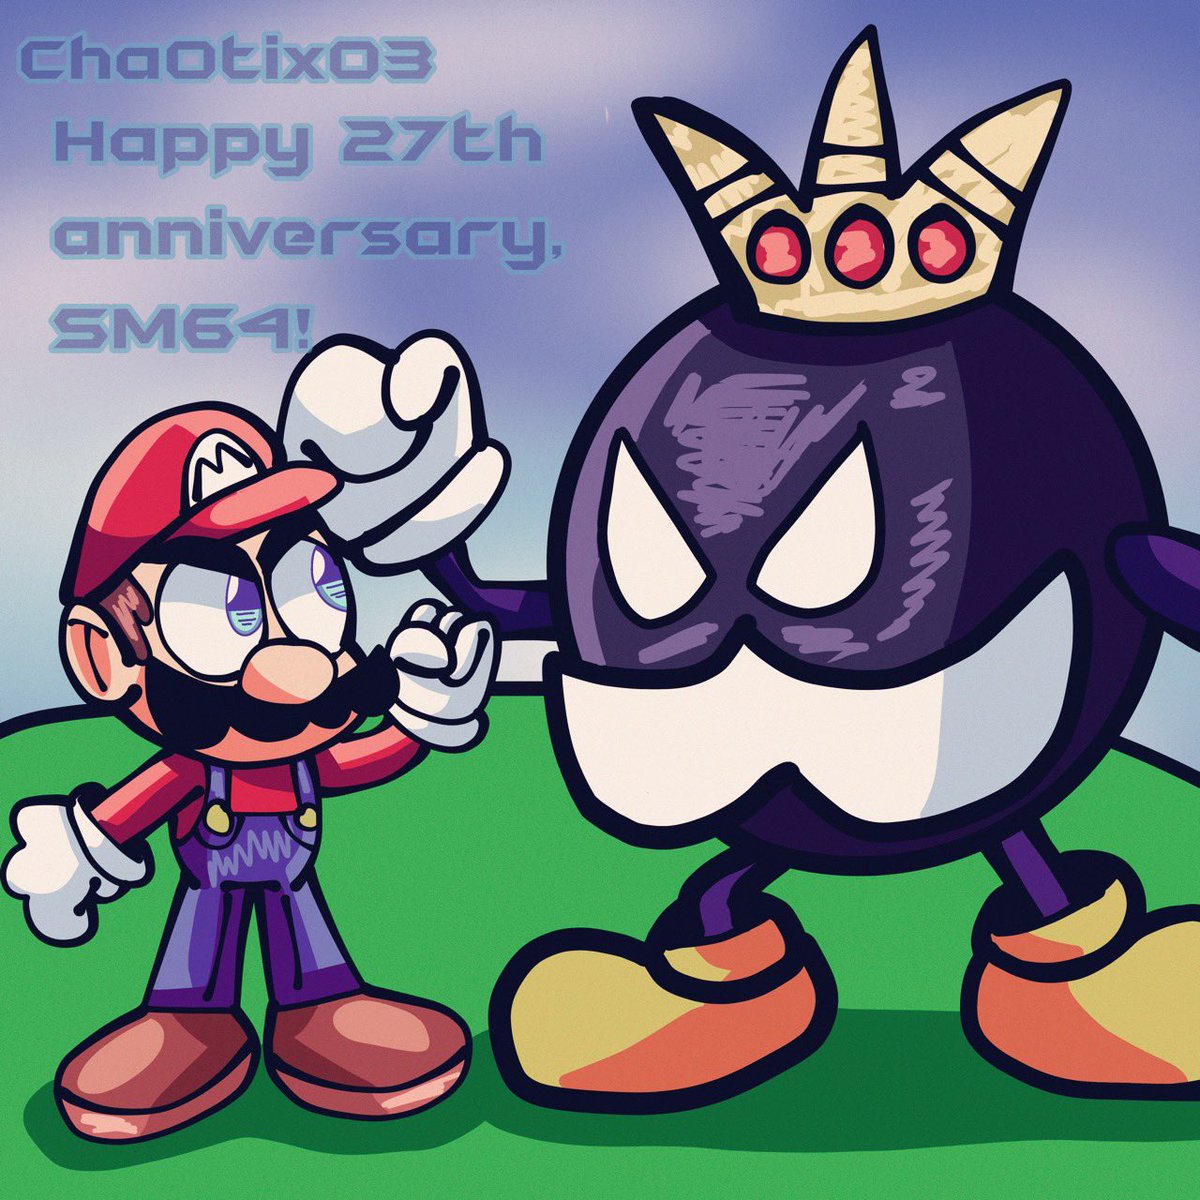 Also, happy 27th anniversary to Super Mario 64! 🎉

#mario #supermario64 #kingbobomb #n64 #nintendo #nintendo64 #bobombbattlefield #27thanniversary #supermario64anniversary